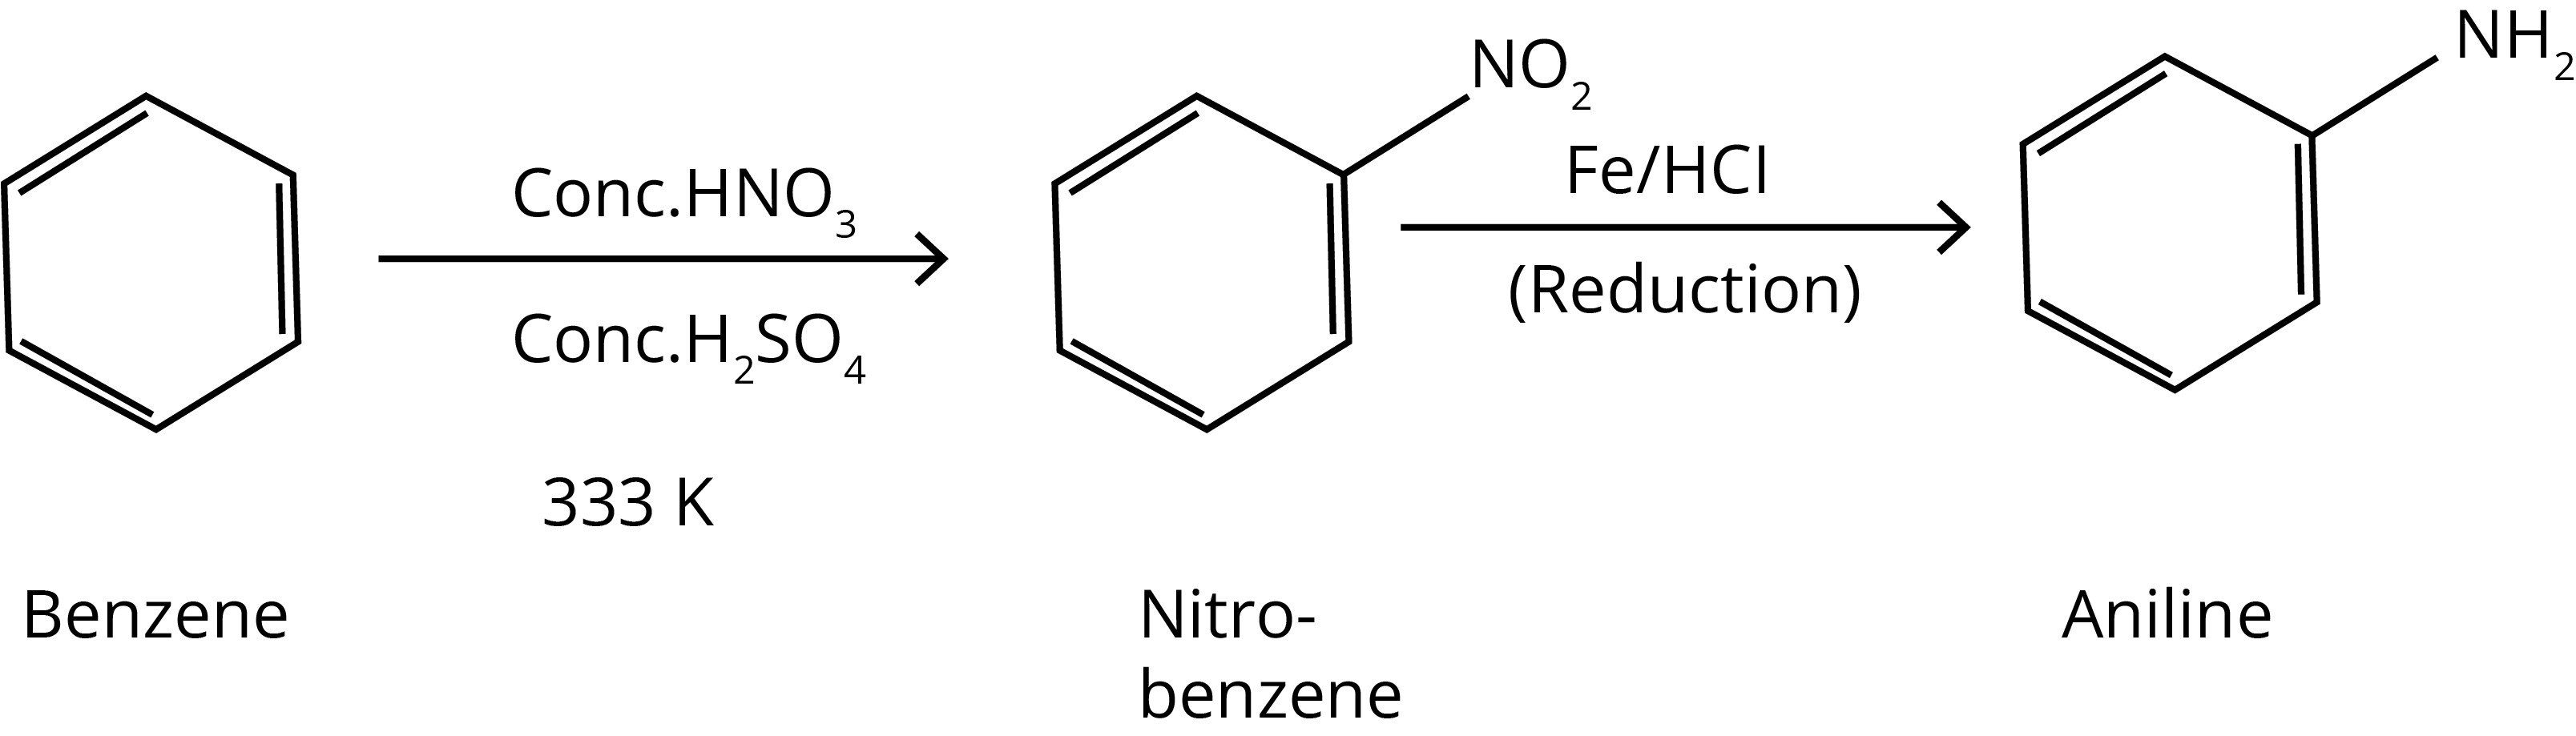 Benzene into aniline